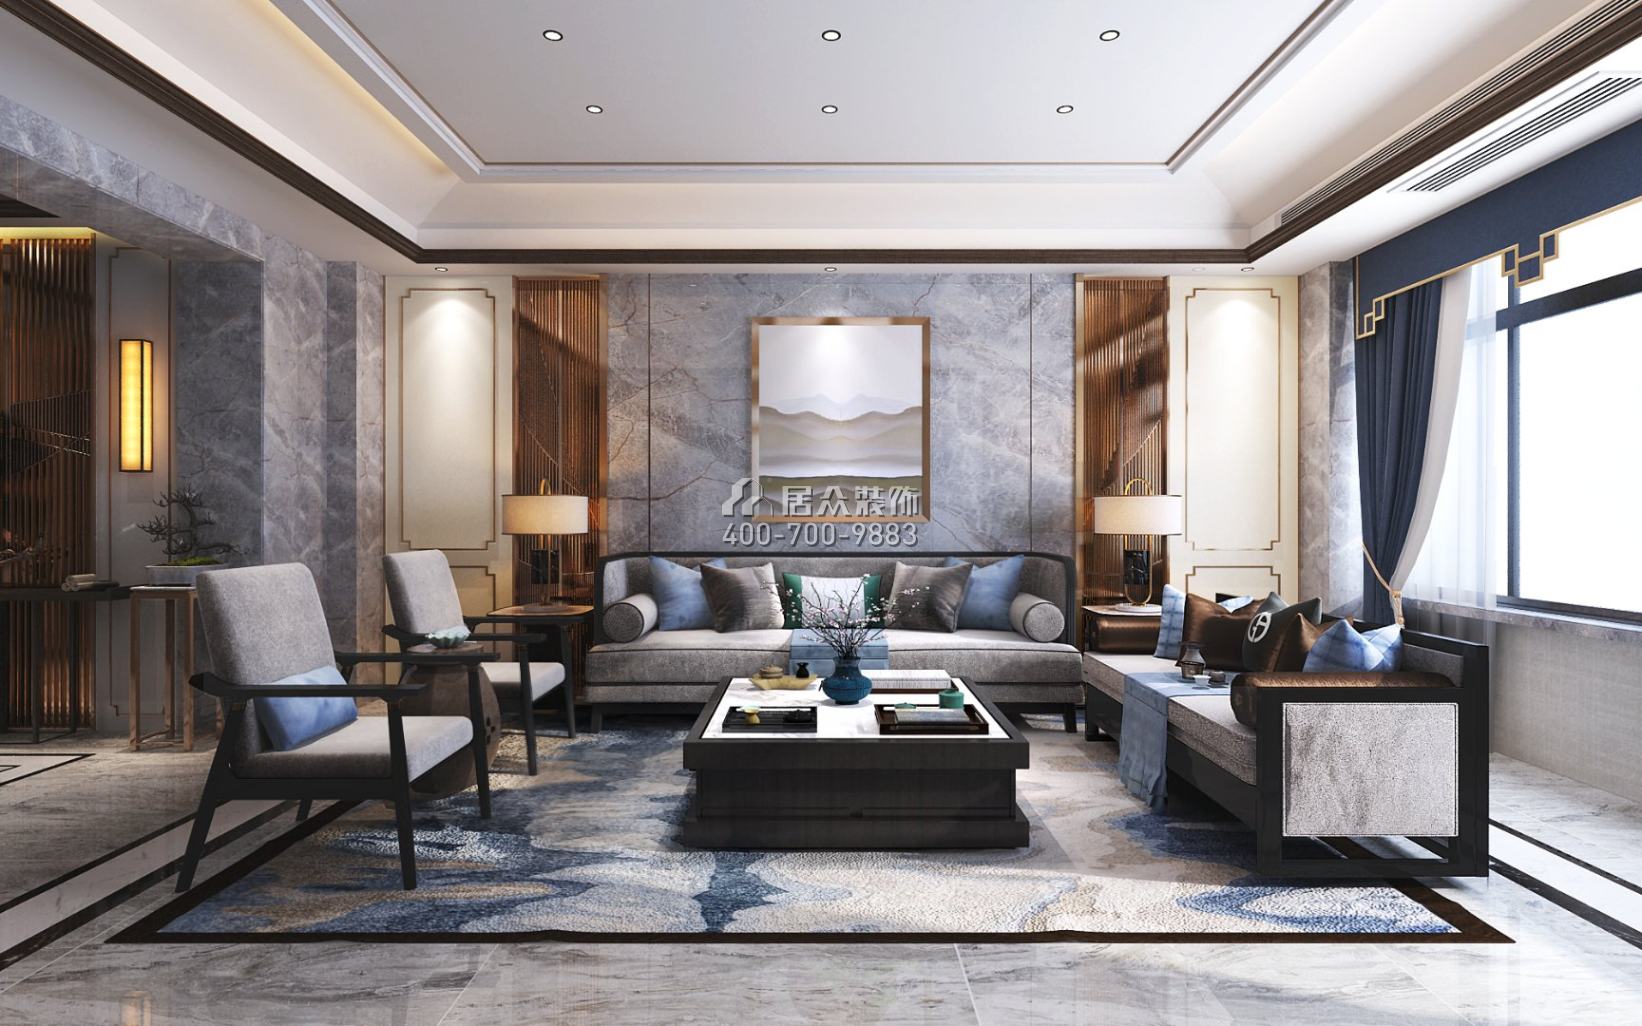 三一翡翠湾240平方米中式风格平层户型客厅装修效果图